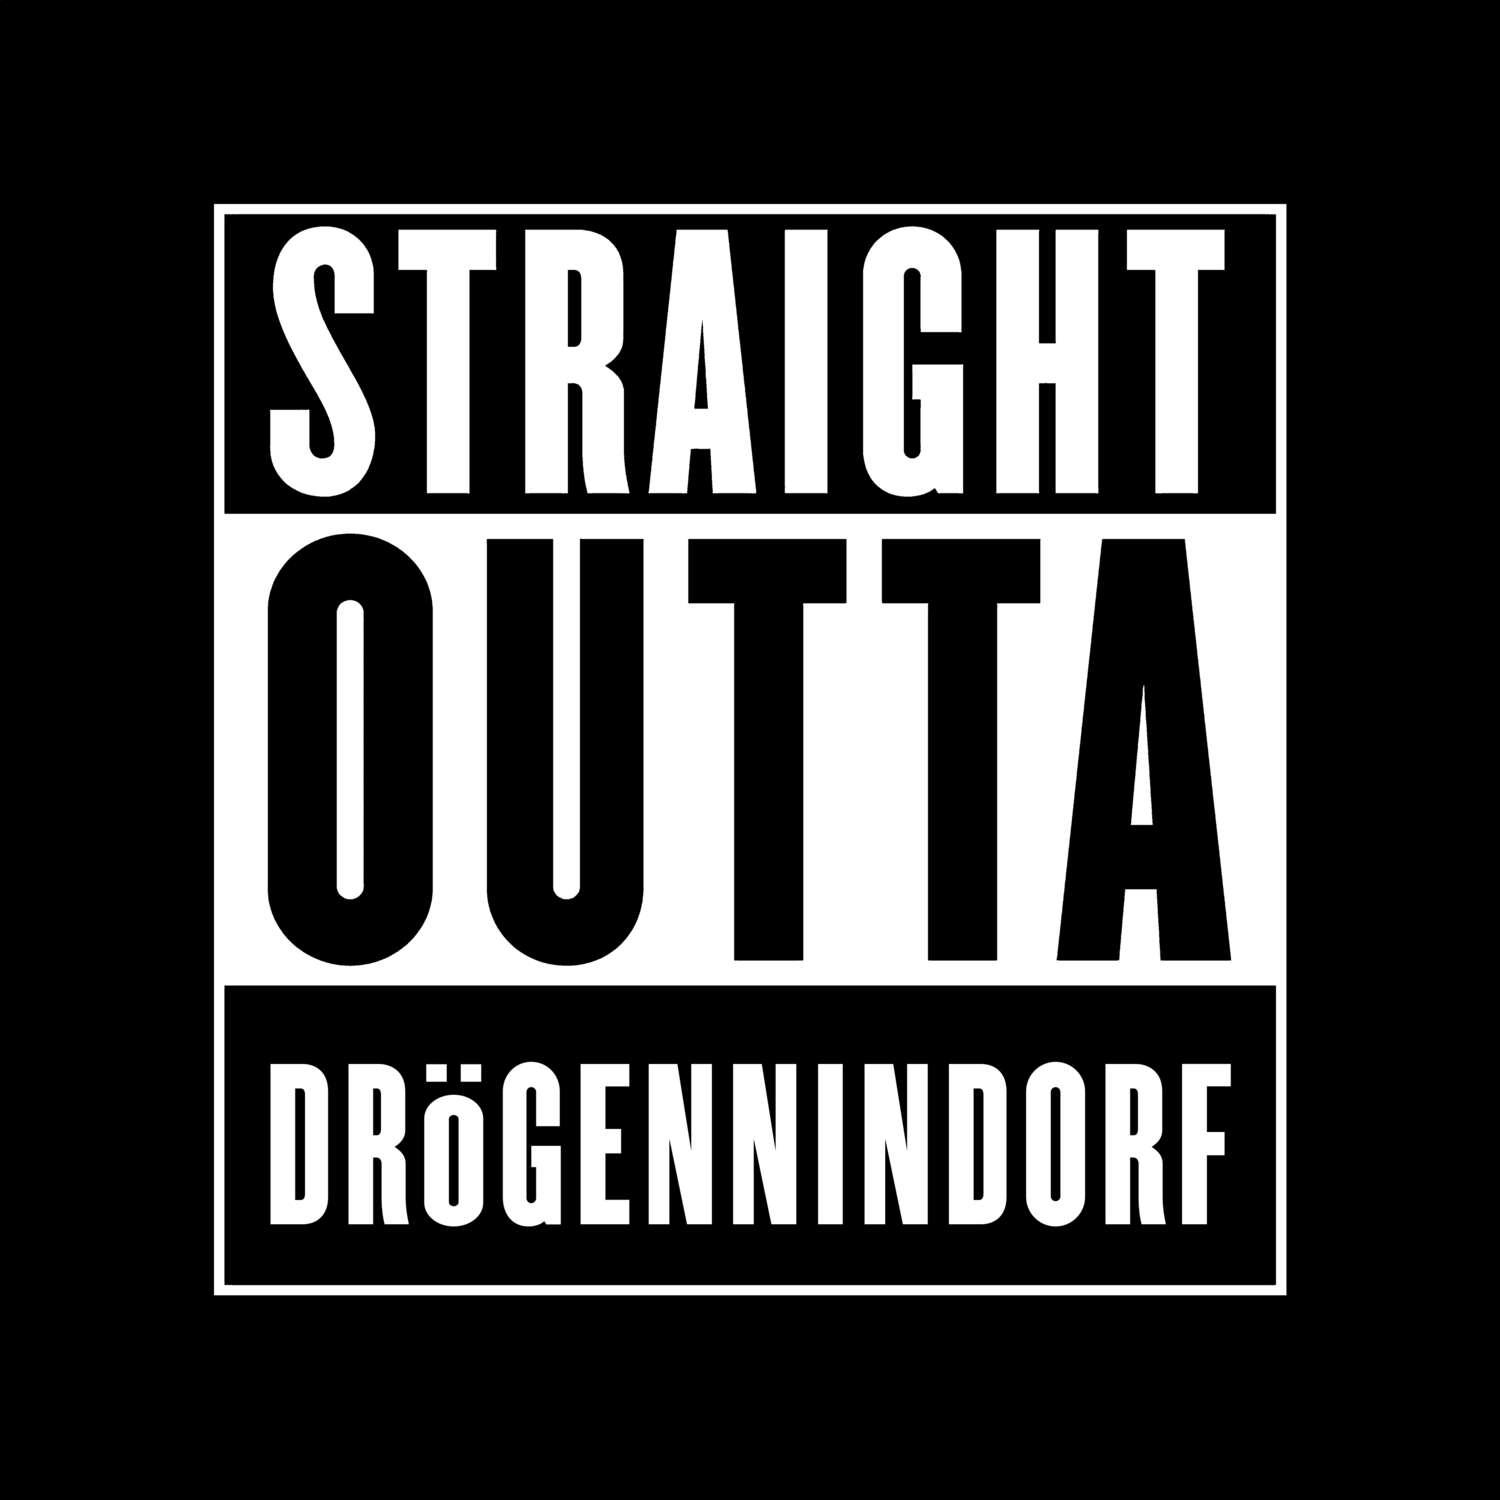 Drögennindorf T-Shirt »Straight Outta«